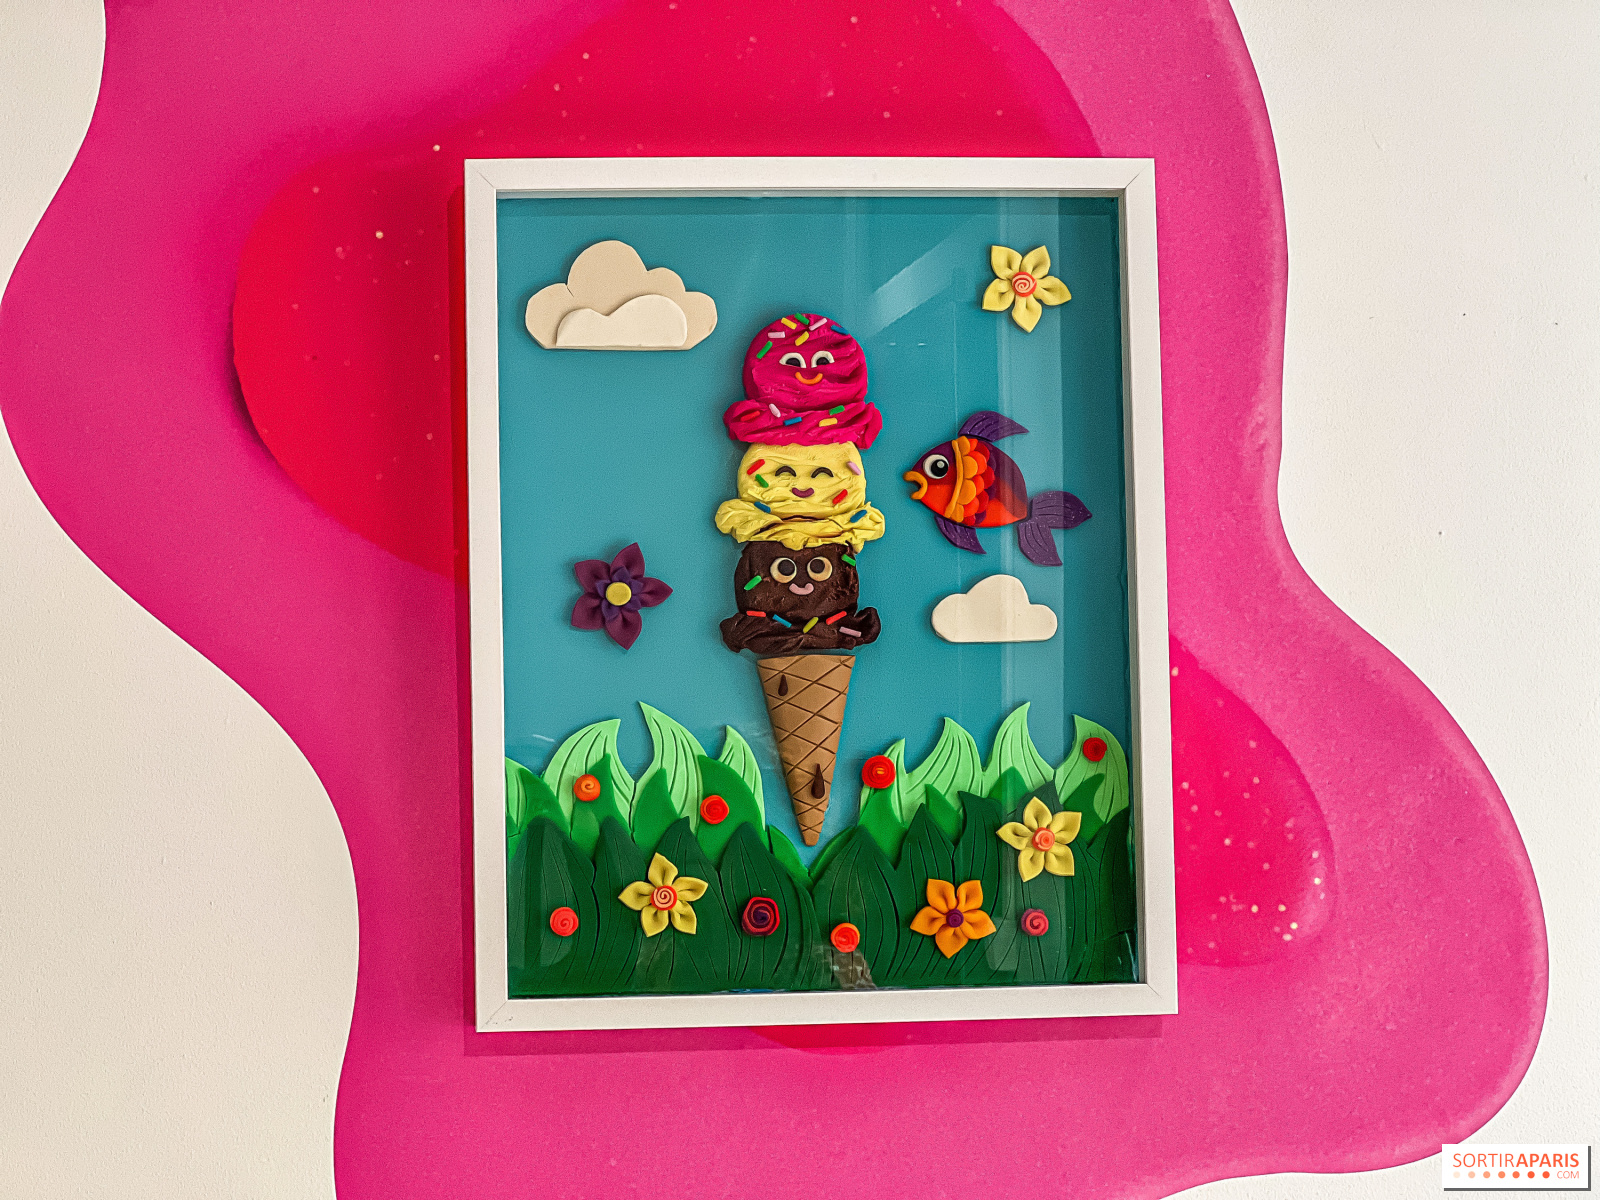 Coffret pâte à modeler Play-Doh Créations : Mon super café